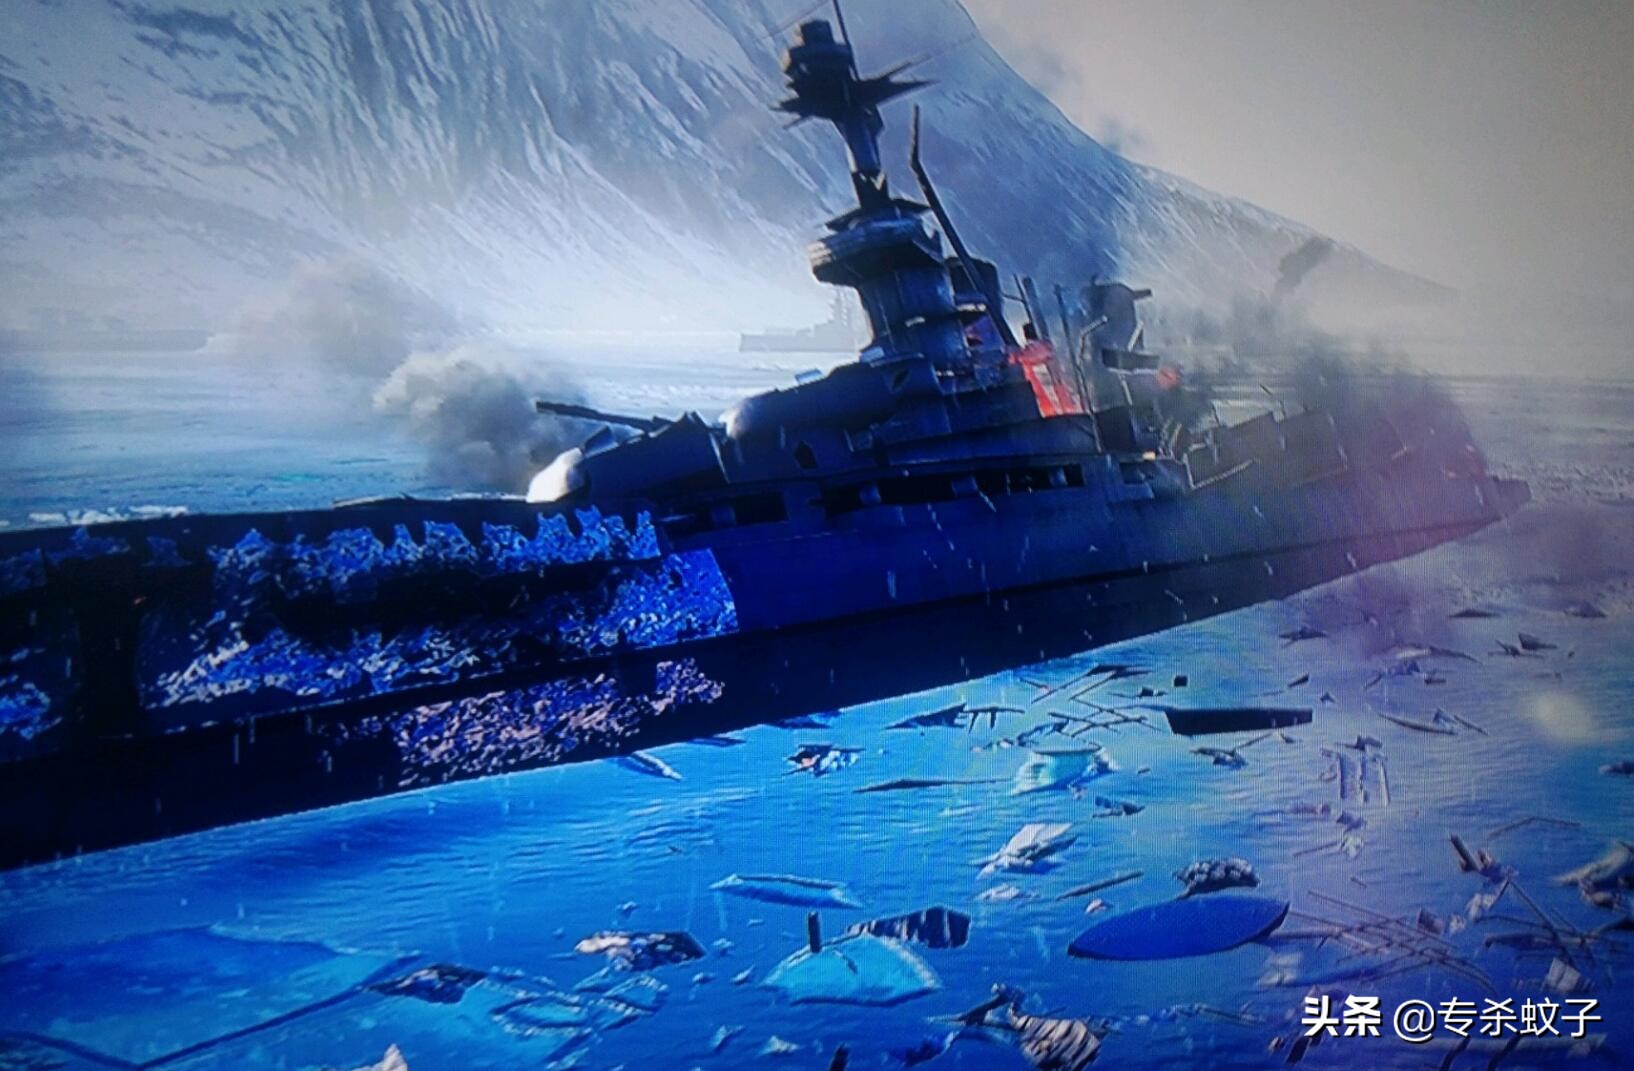 被击毁10艘驱逐舰,游戏场景在里面体现出来了纳尔维克的两次海战中